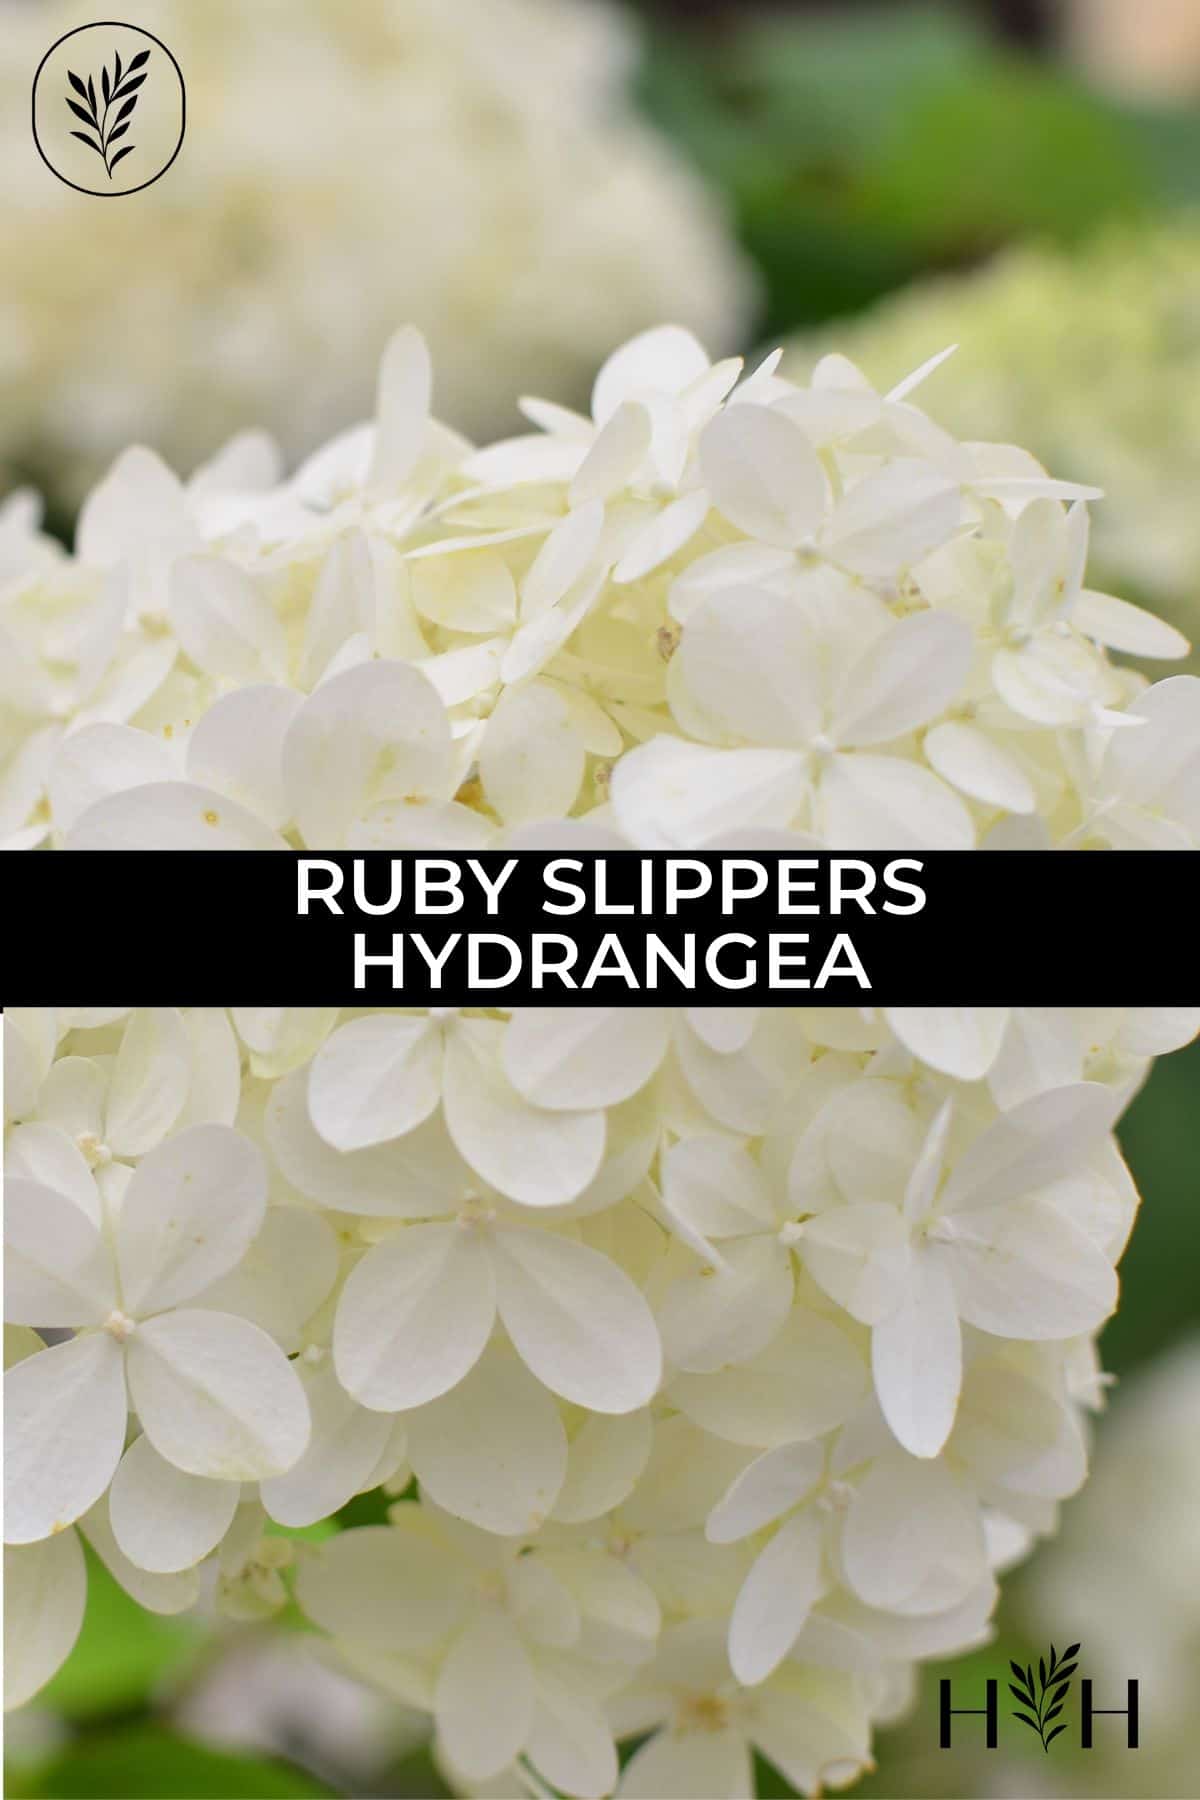 Ruby slippers hydrangea via @home4theharvest